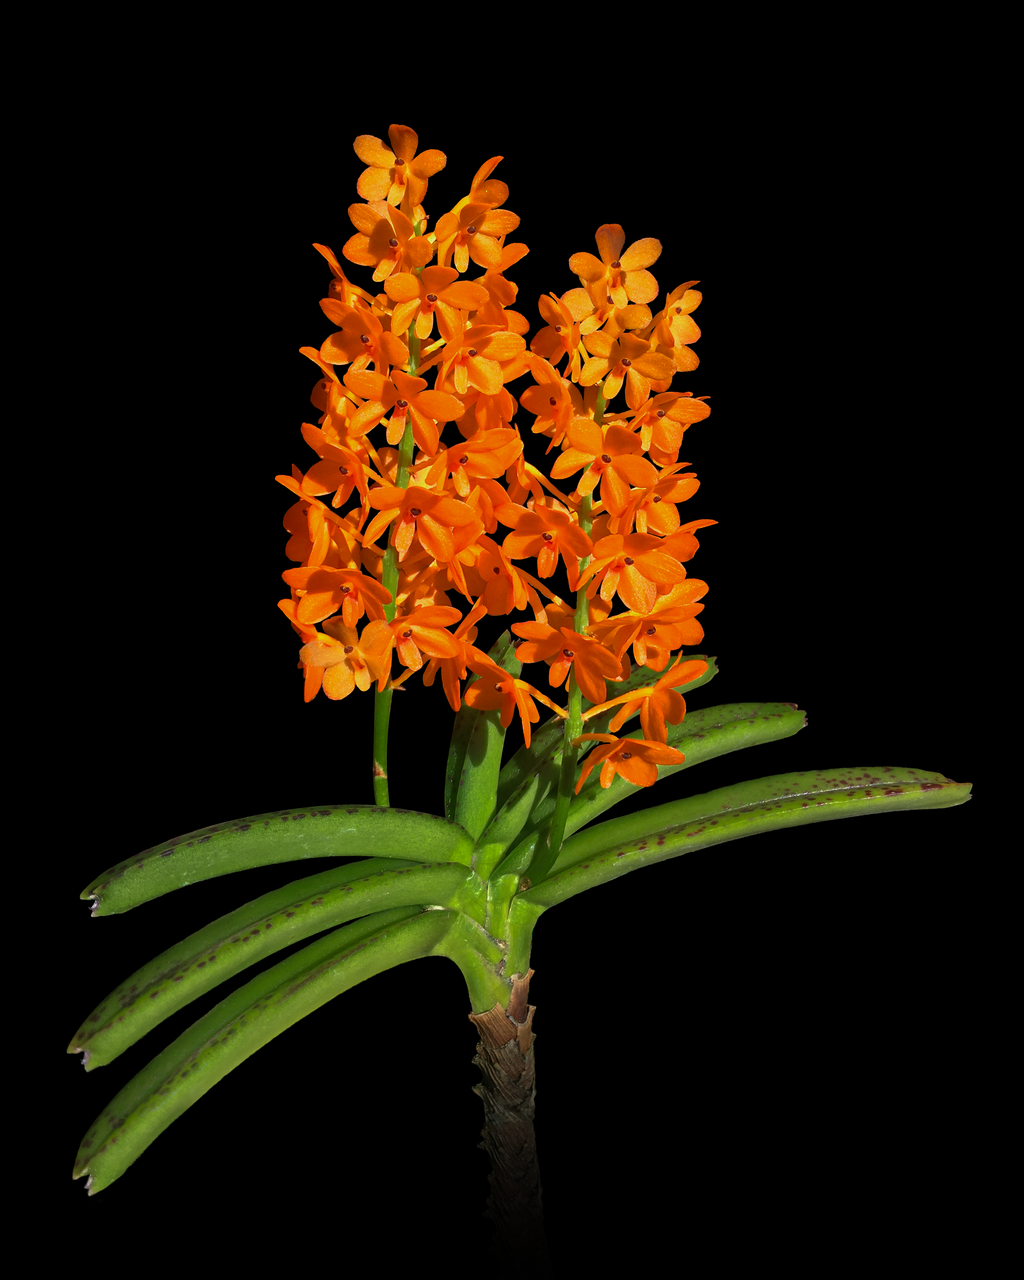 V. garayi or Ascocentrum miniatum a hot mini orchid